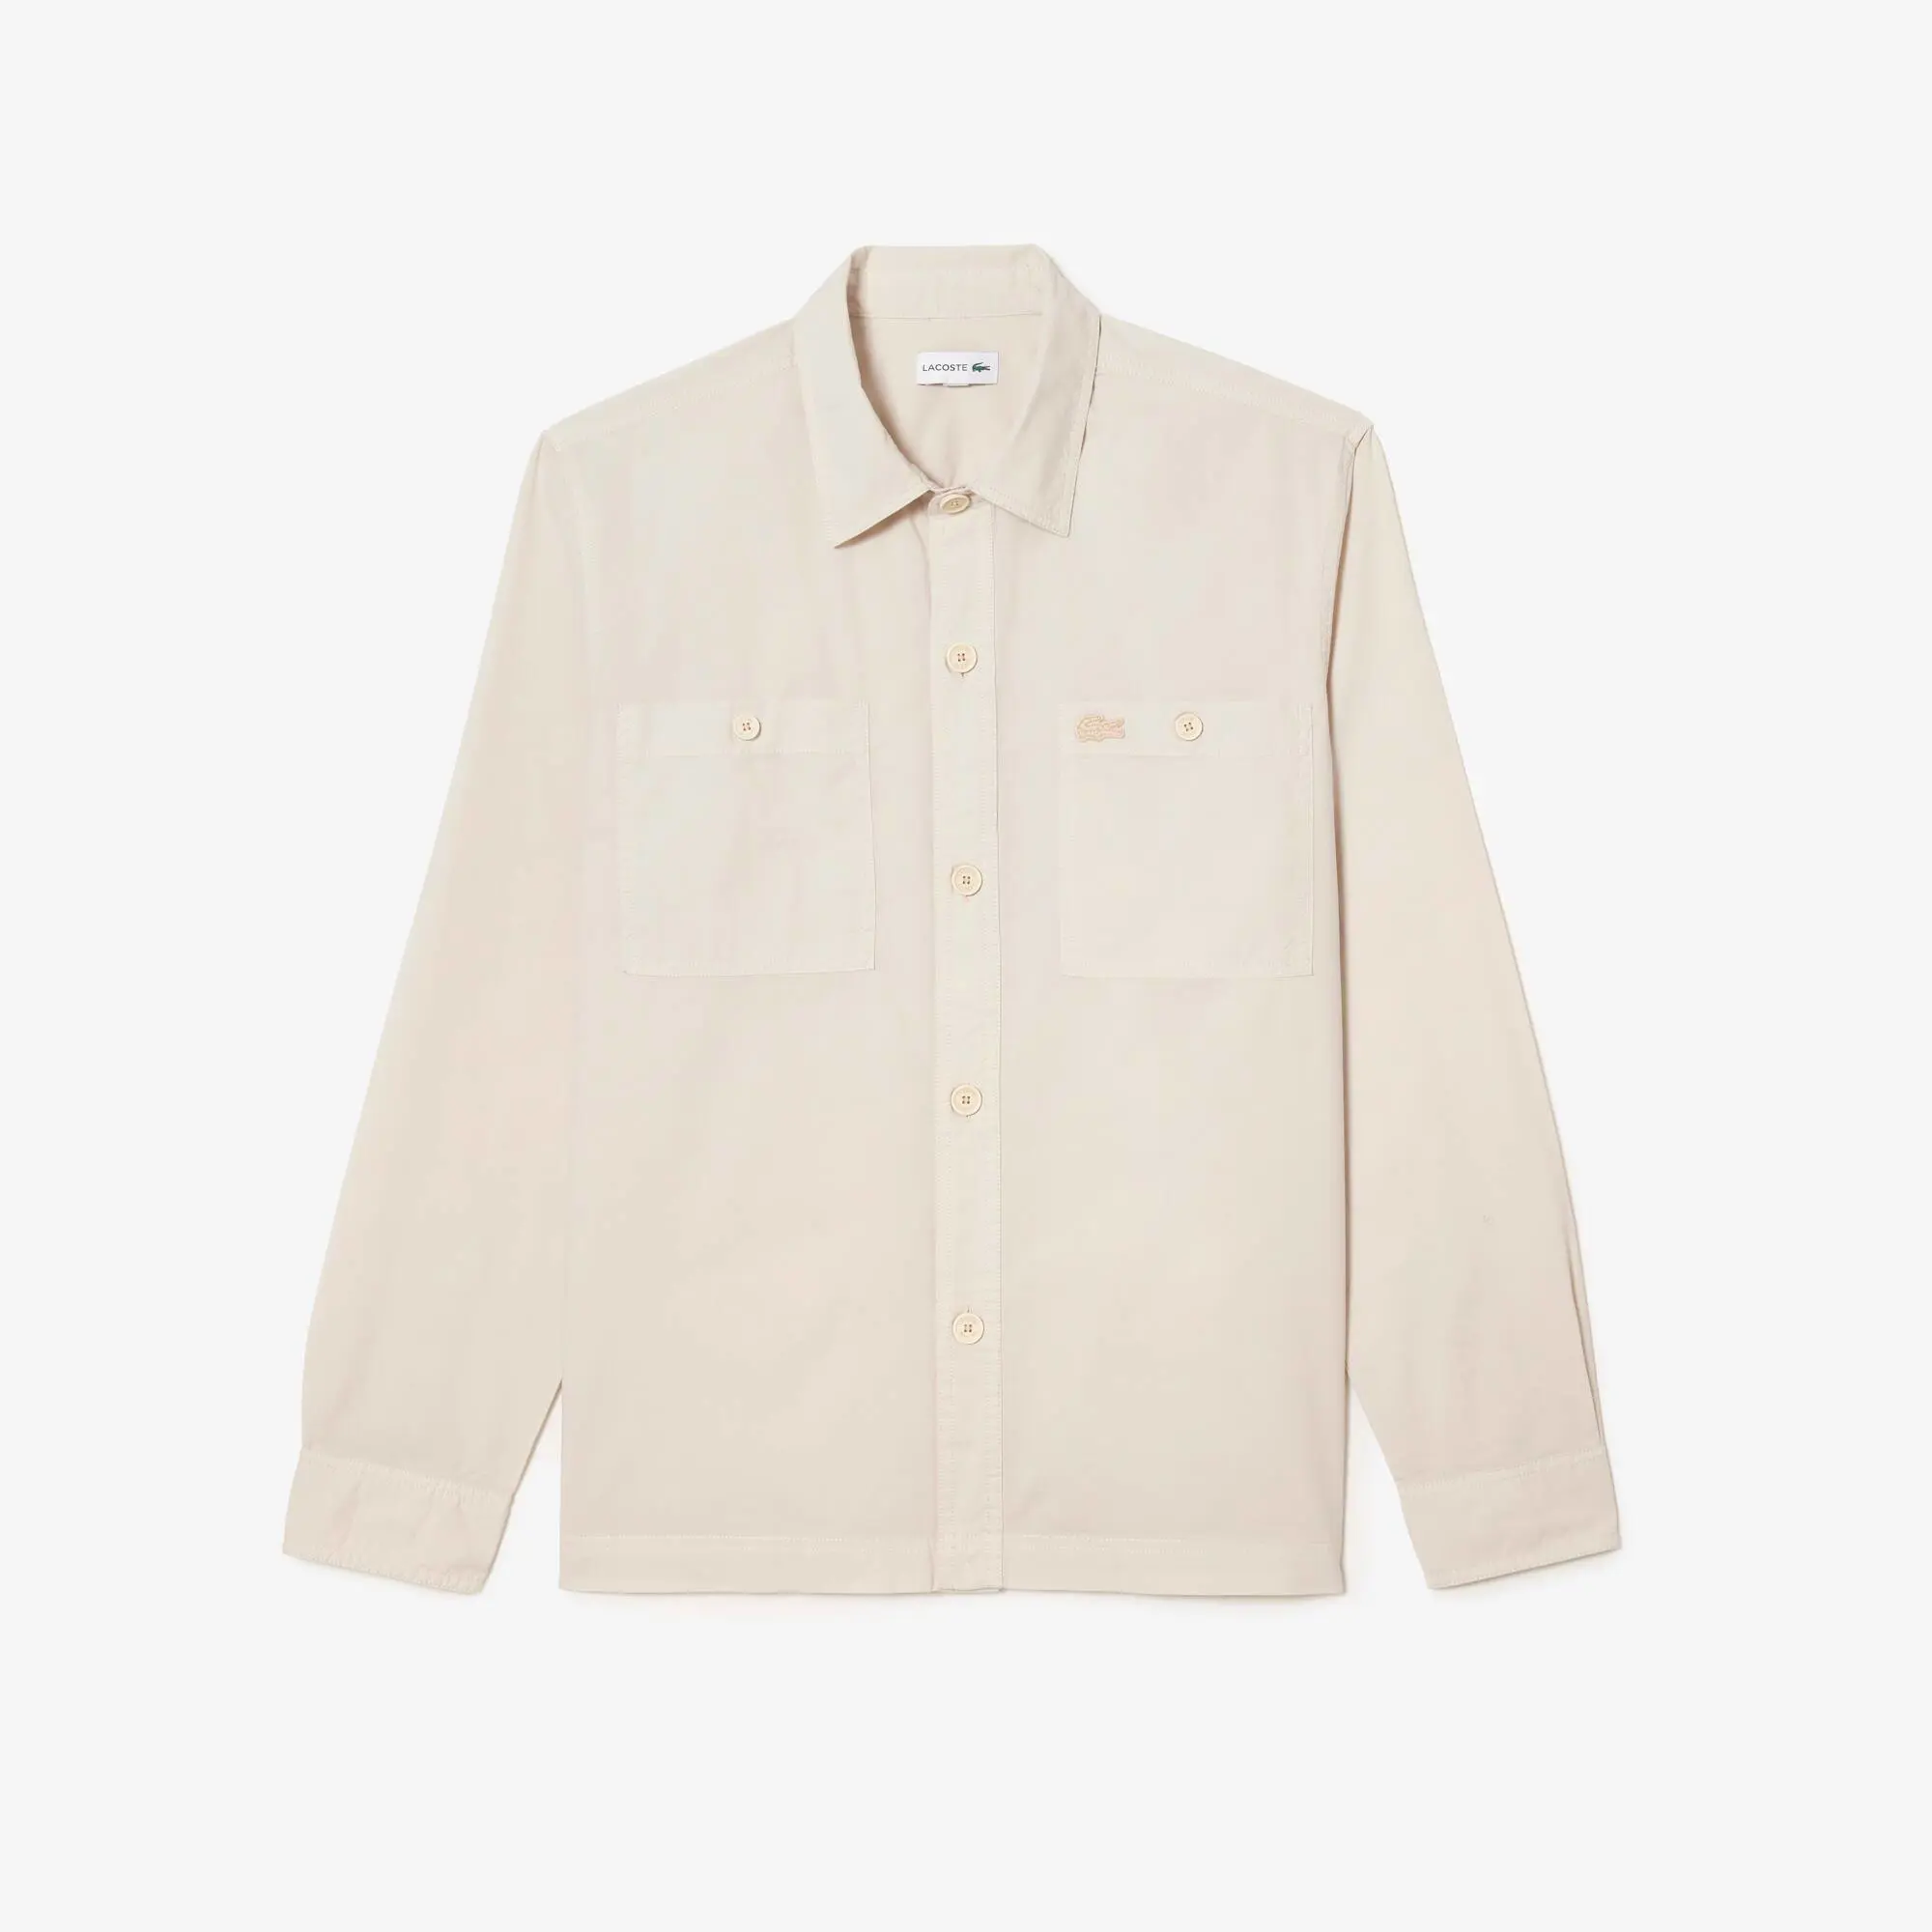 Lacoste Men’s Lacoste Organic Cotton Shirt. 2